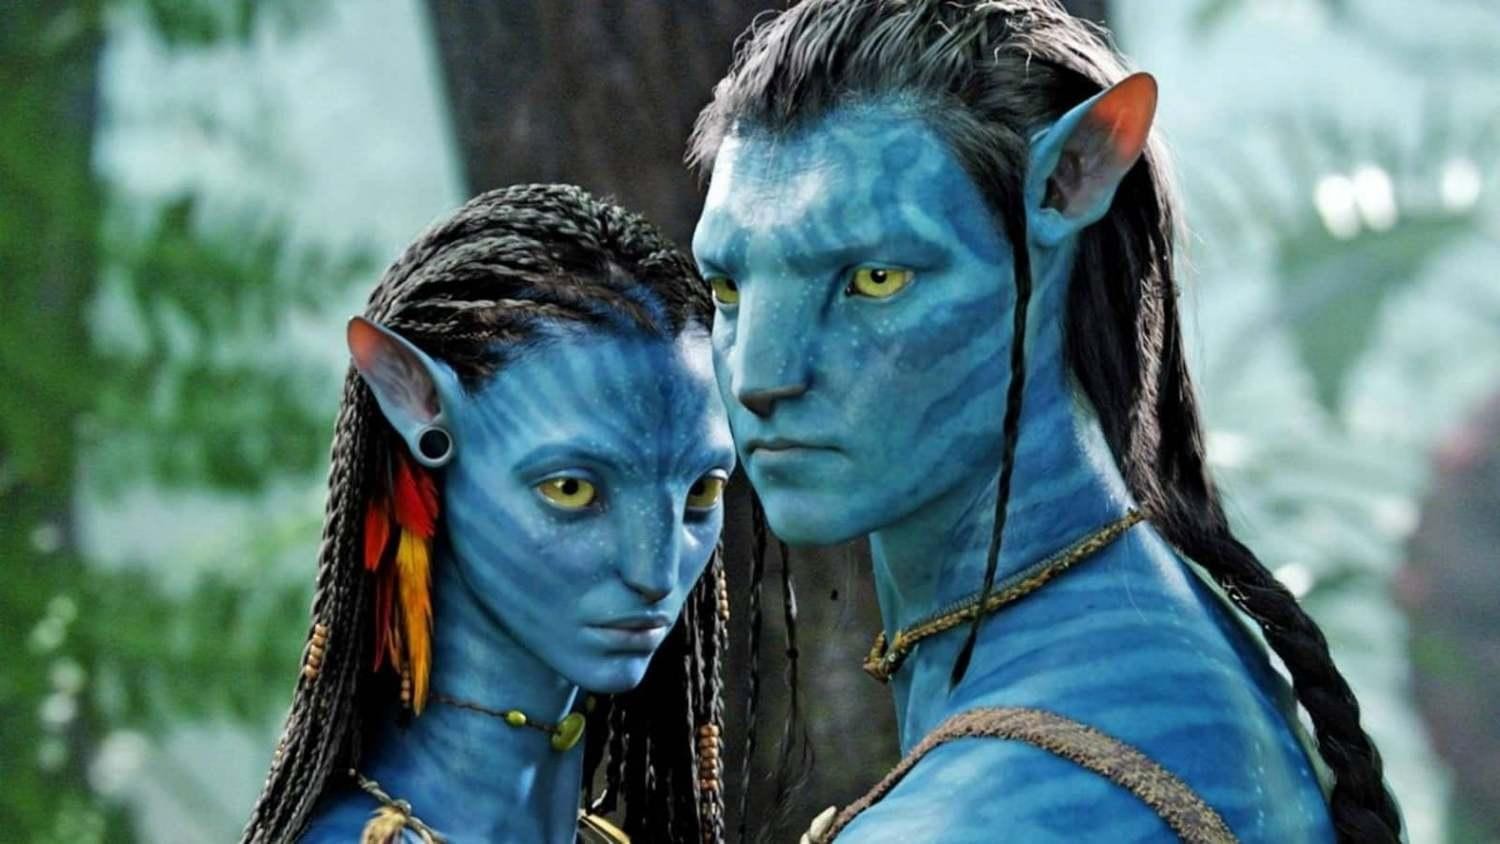 Avatar kỹ xảo ấn tượng với những cảnh quay đẹp đến nao lòng và những hình ảnh hoành tráng. Các đoàn làm phim đã rất cẩn trọng trong việc tạo ra nhân vật, không chỉ với chi tiết về vẻ bề ngoài mà còn về tâm hồn và nhân cách. Đây được xem là một trong những bộ phim có kỹ xảo đỉnh cao của điện ảnh thế giới.